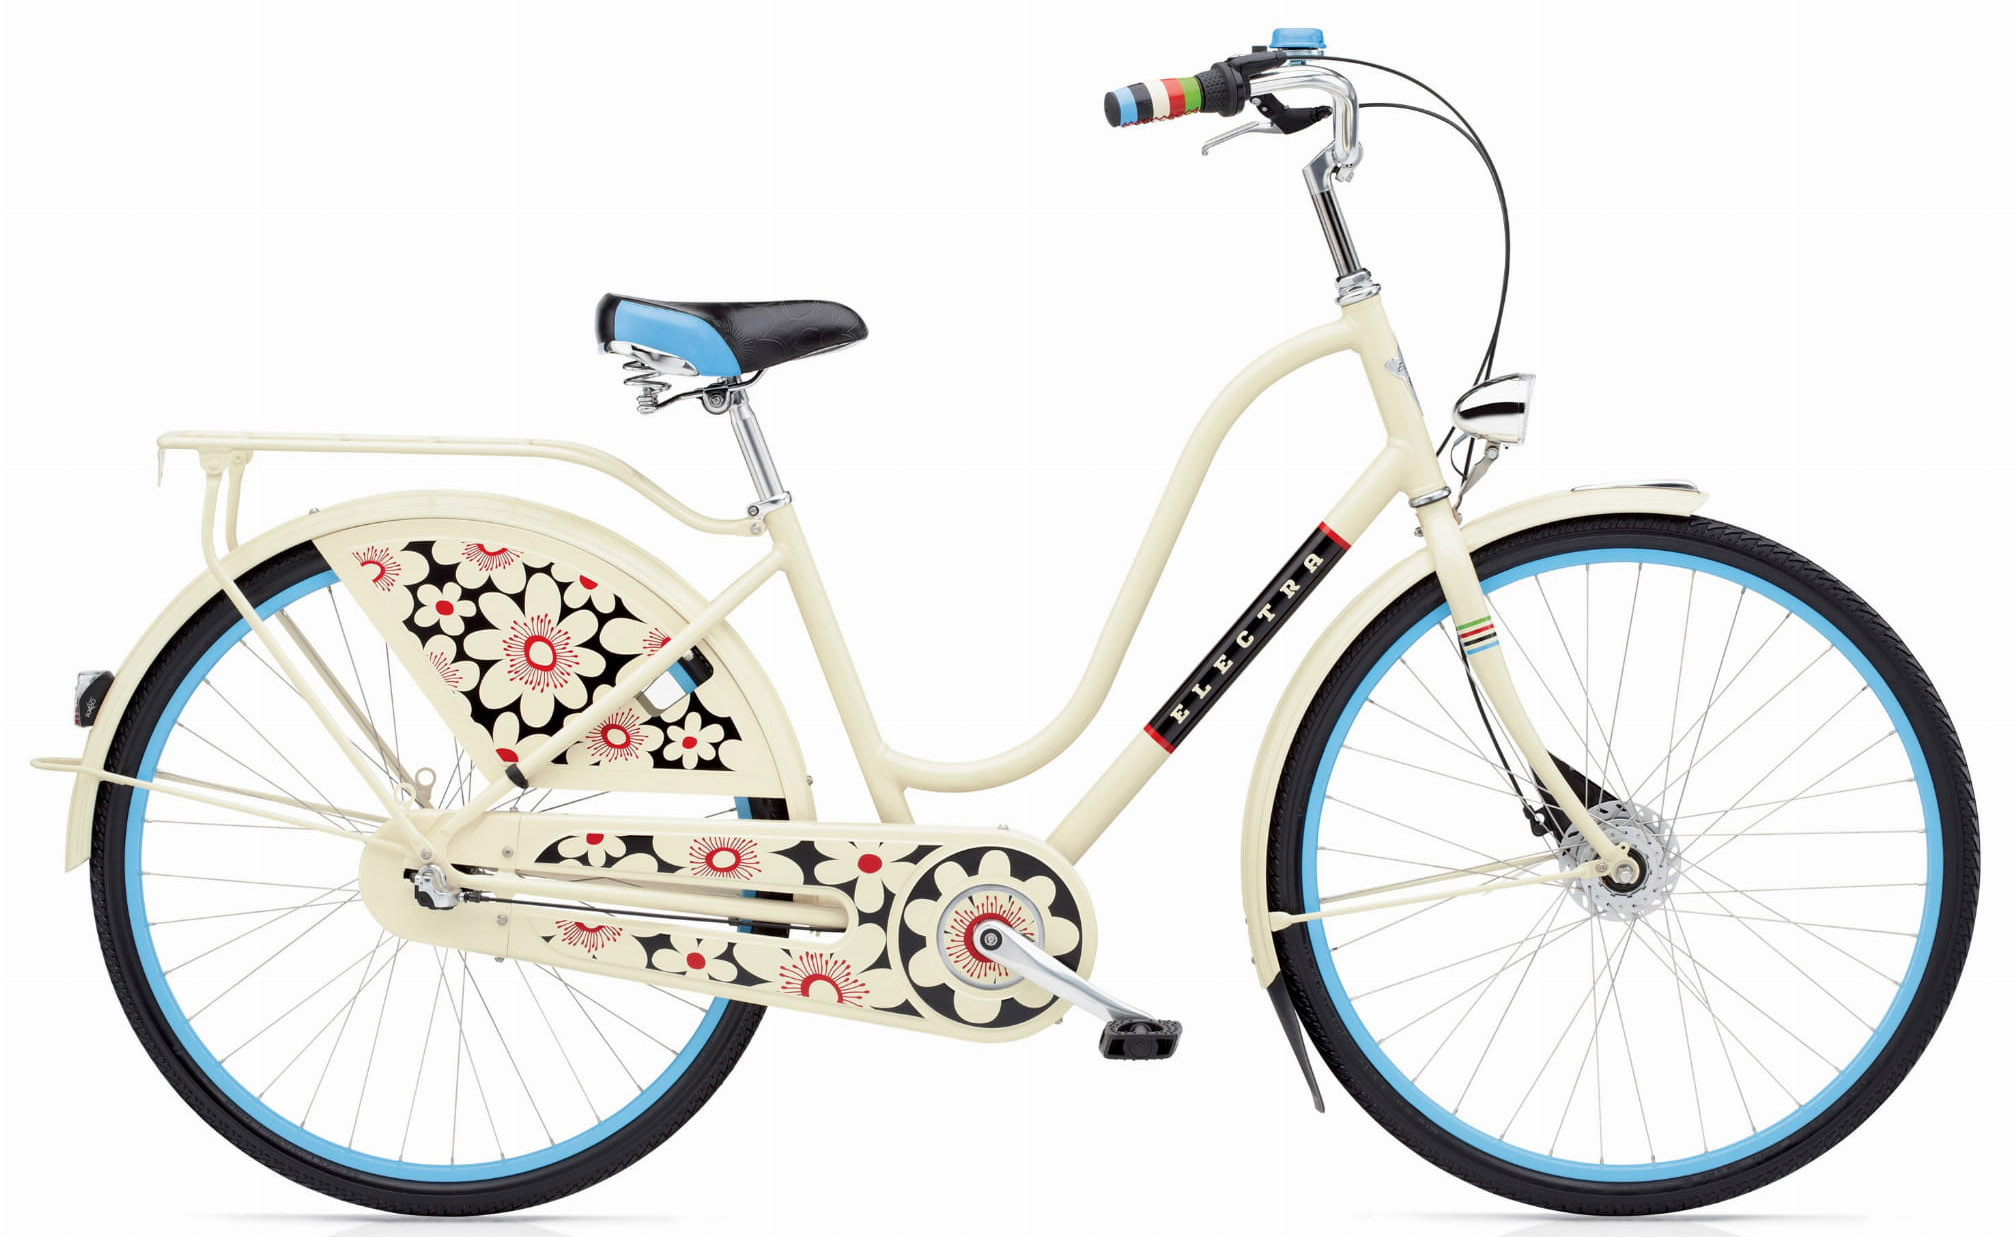  Отзывы о Женском велосипеде Electra Amsterdam Fashion 7i Ladies 2020